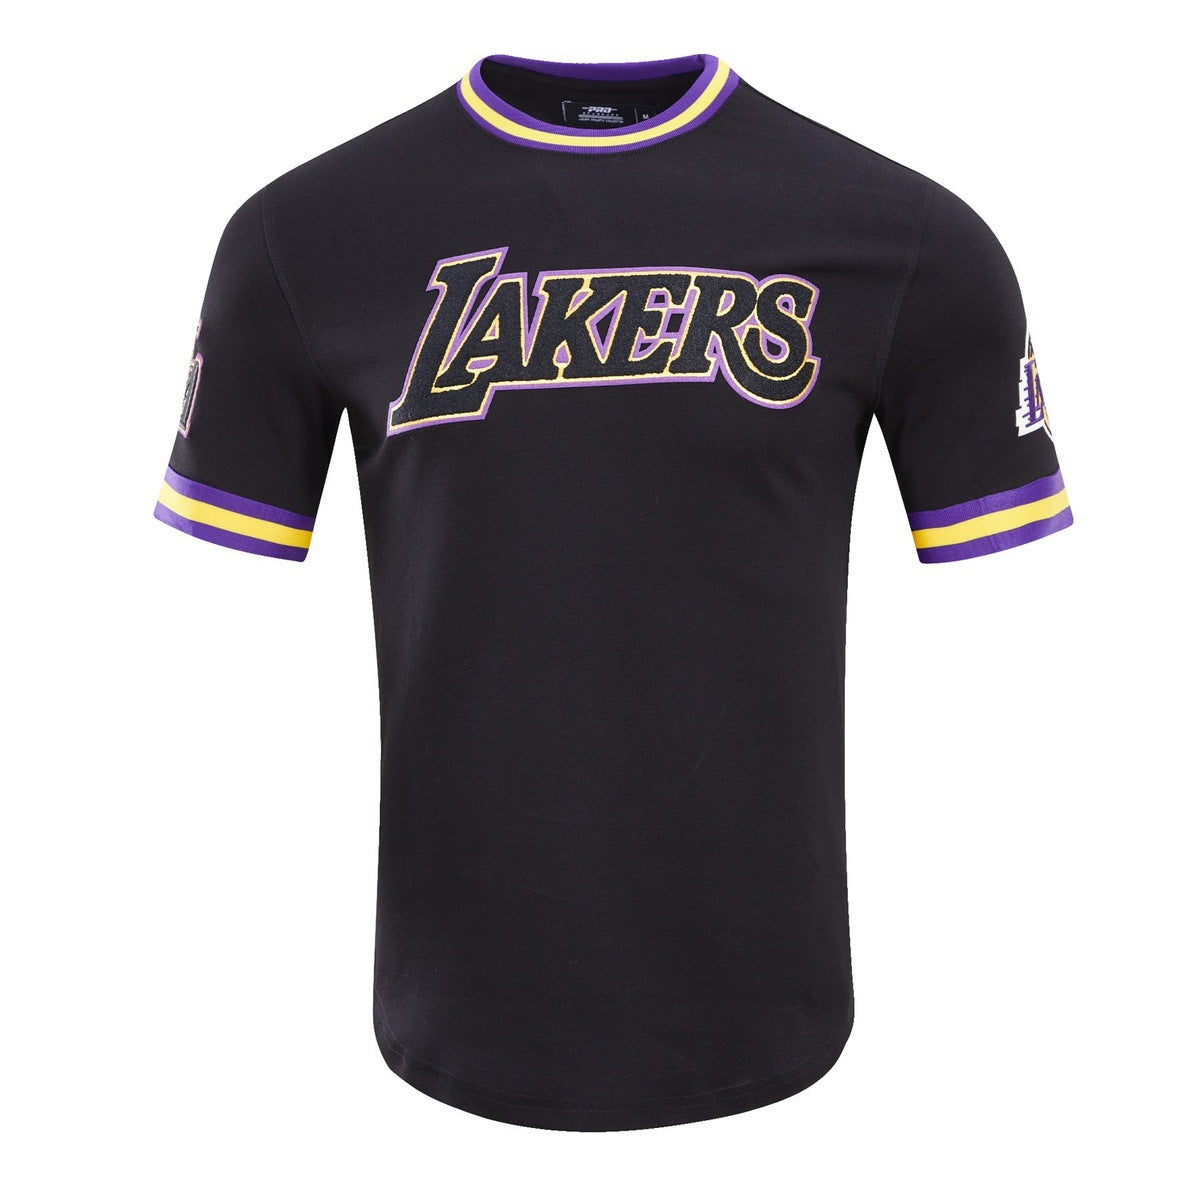 Pro Standard Lakers Wheat T-Shirt - Men's